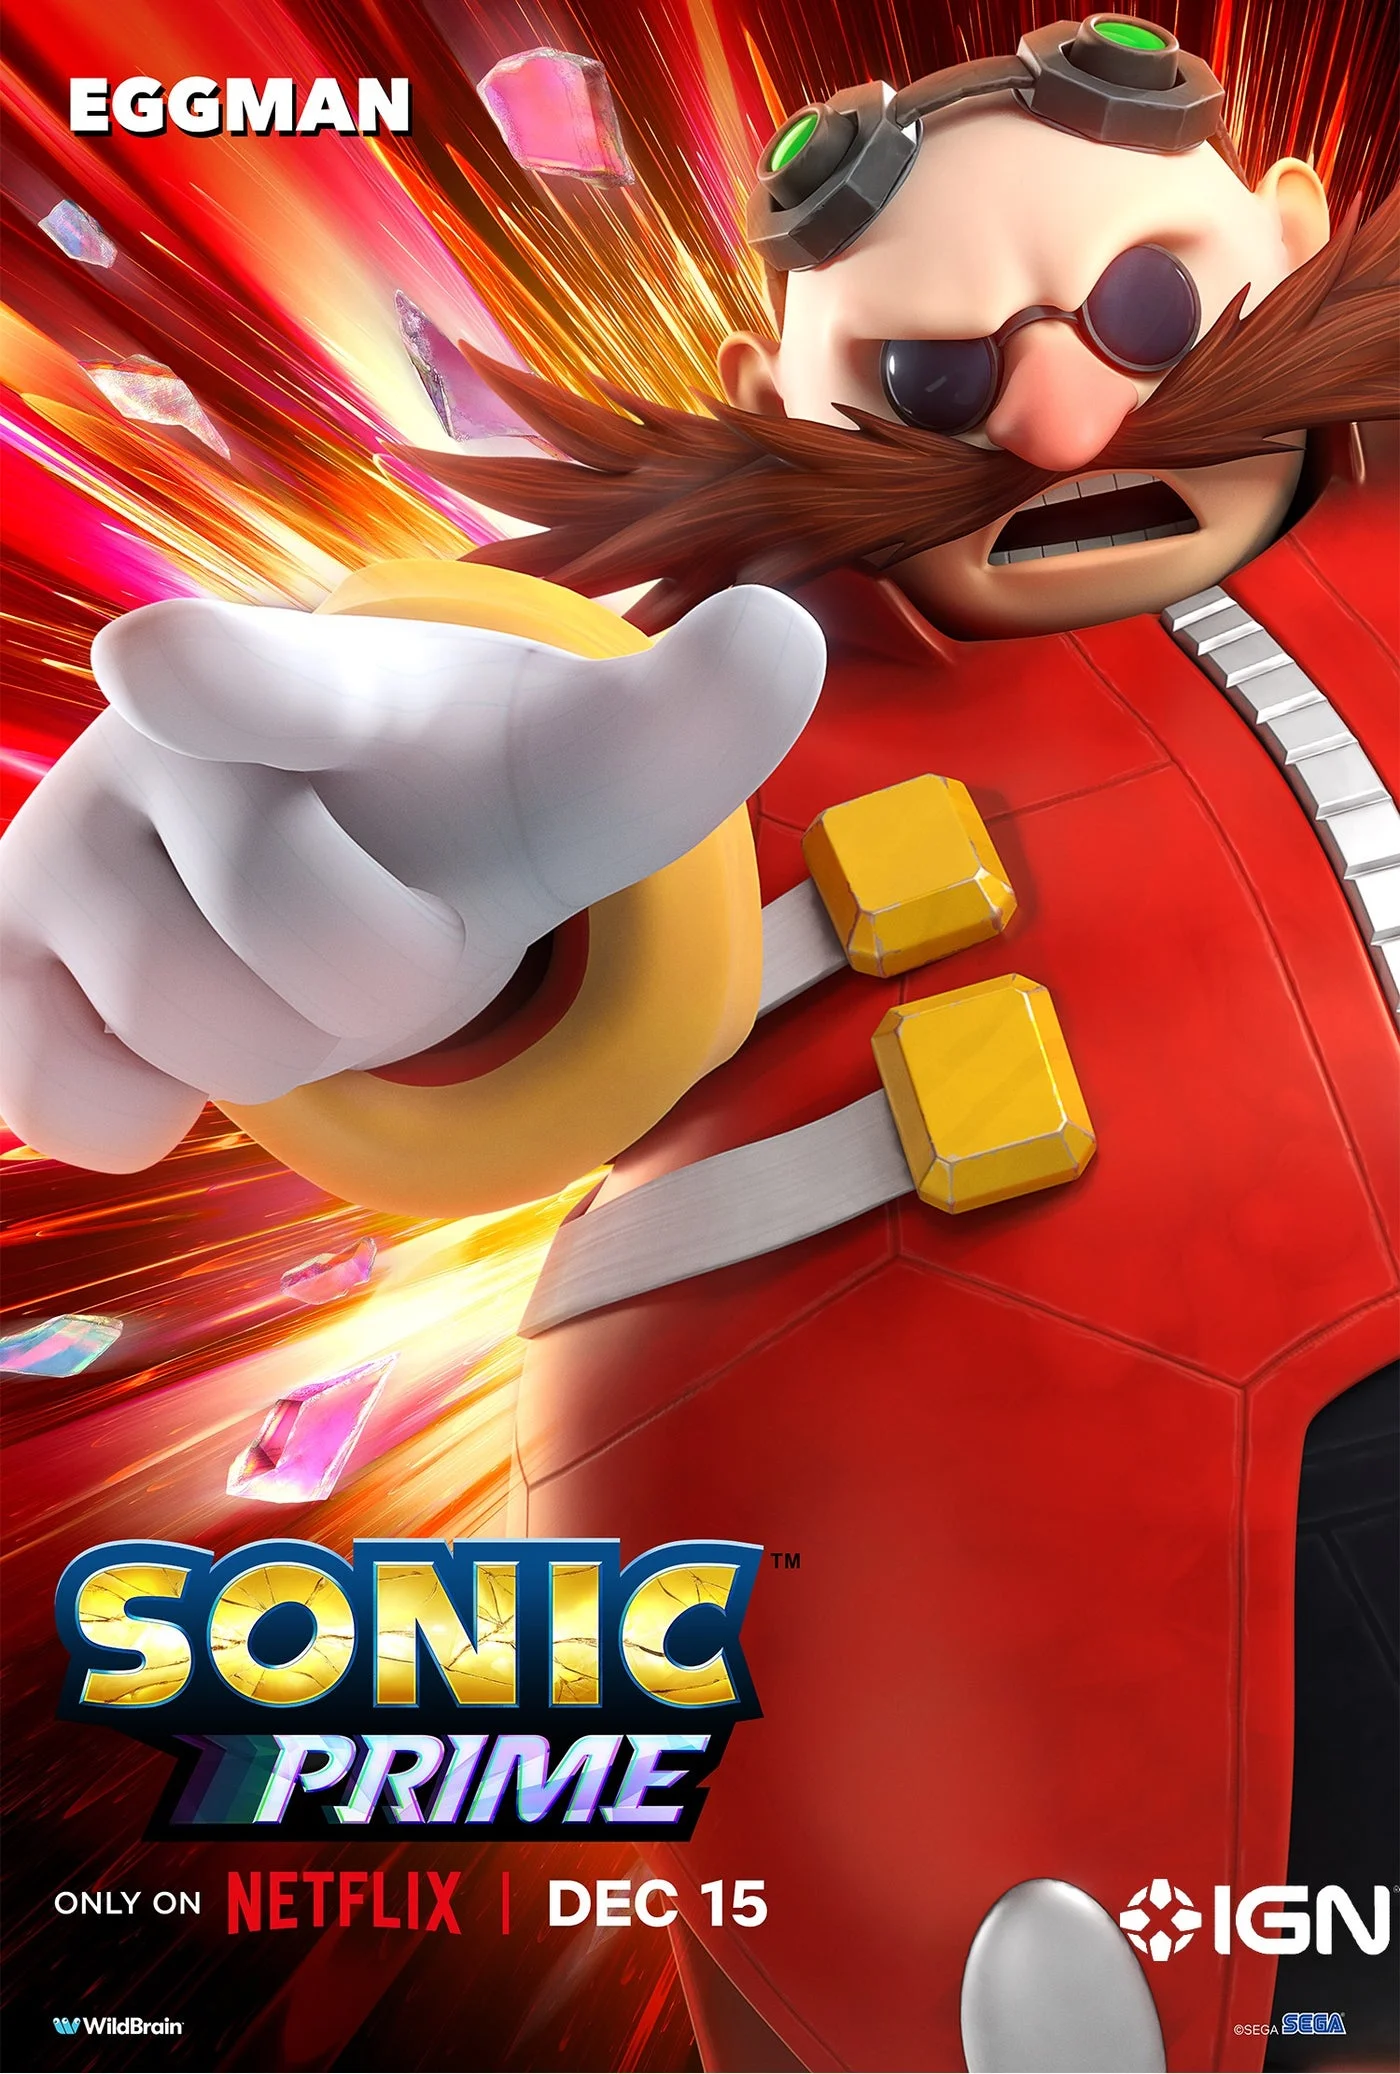 Мультсериал Sonic Prime выходит на Netflix в декабре - фото 8